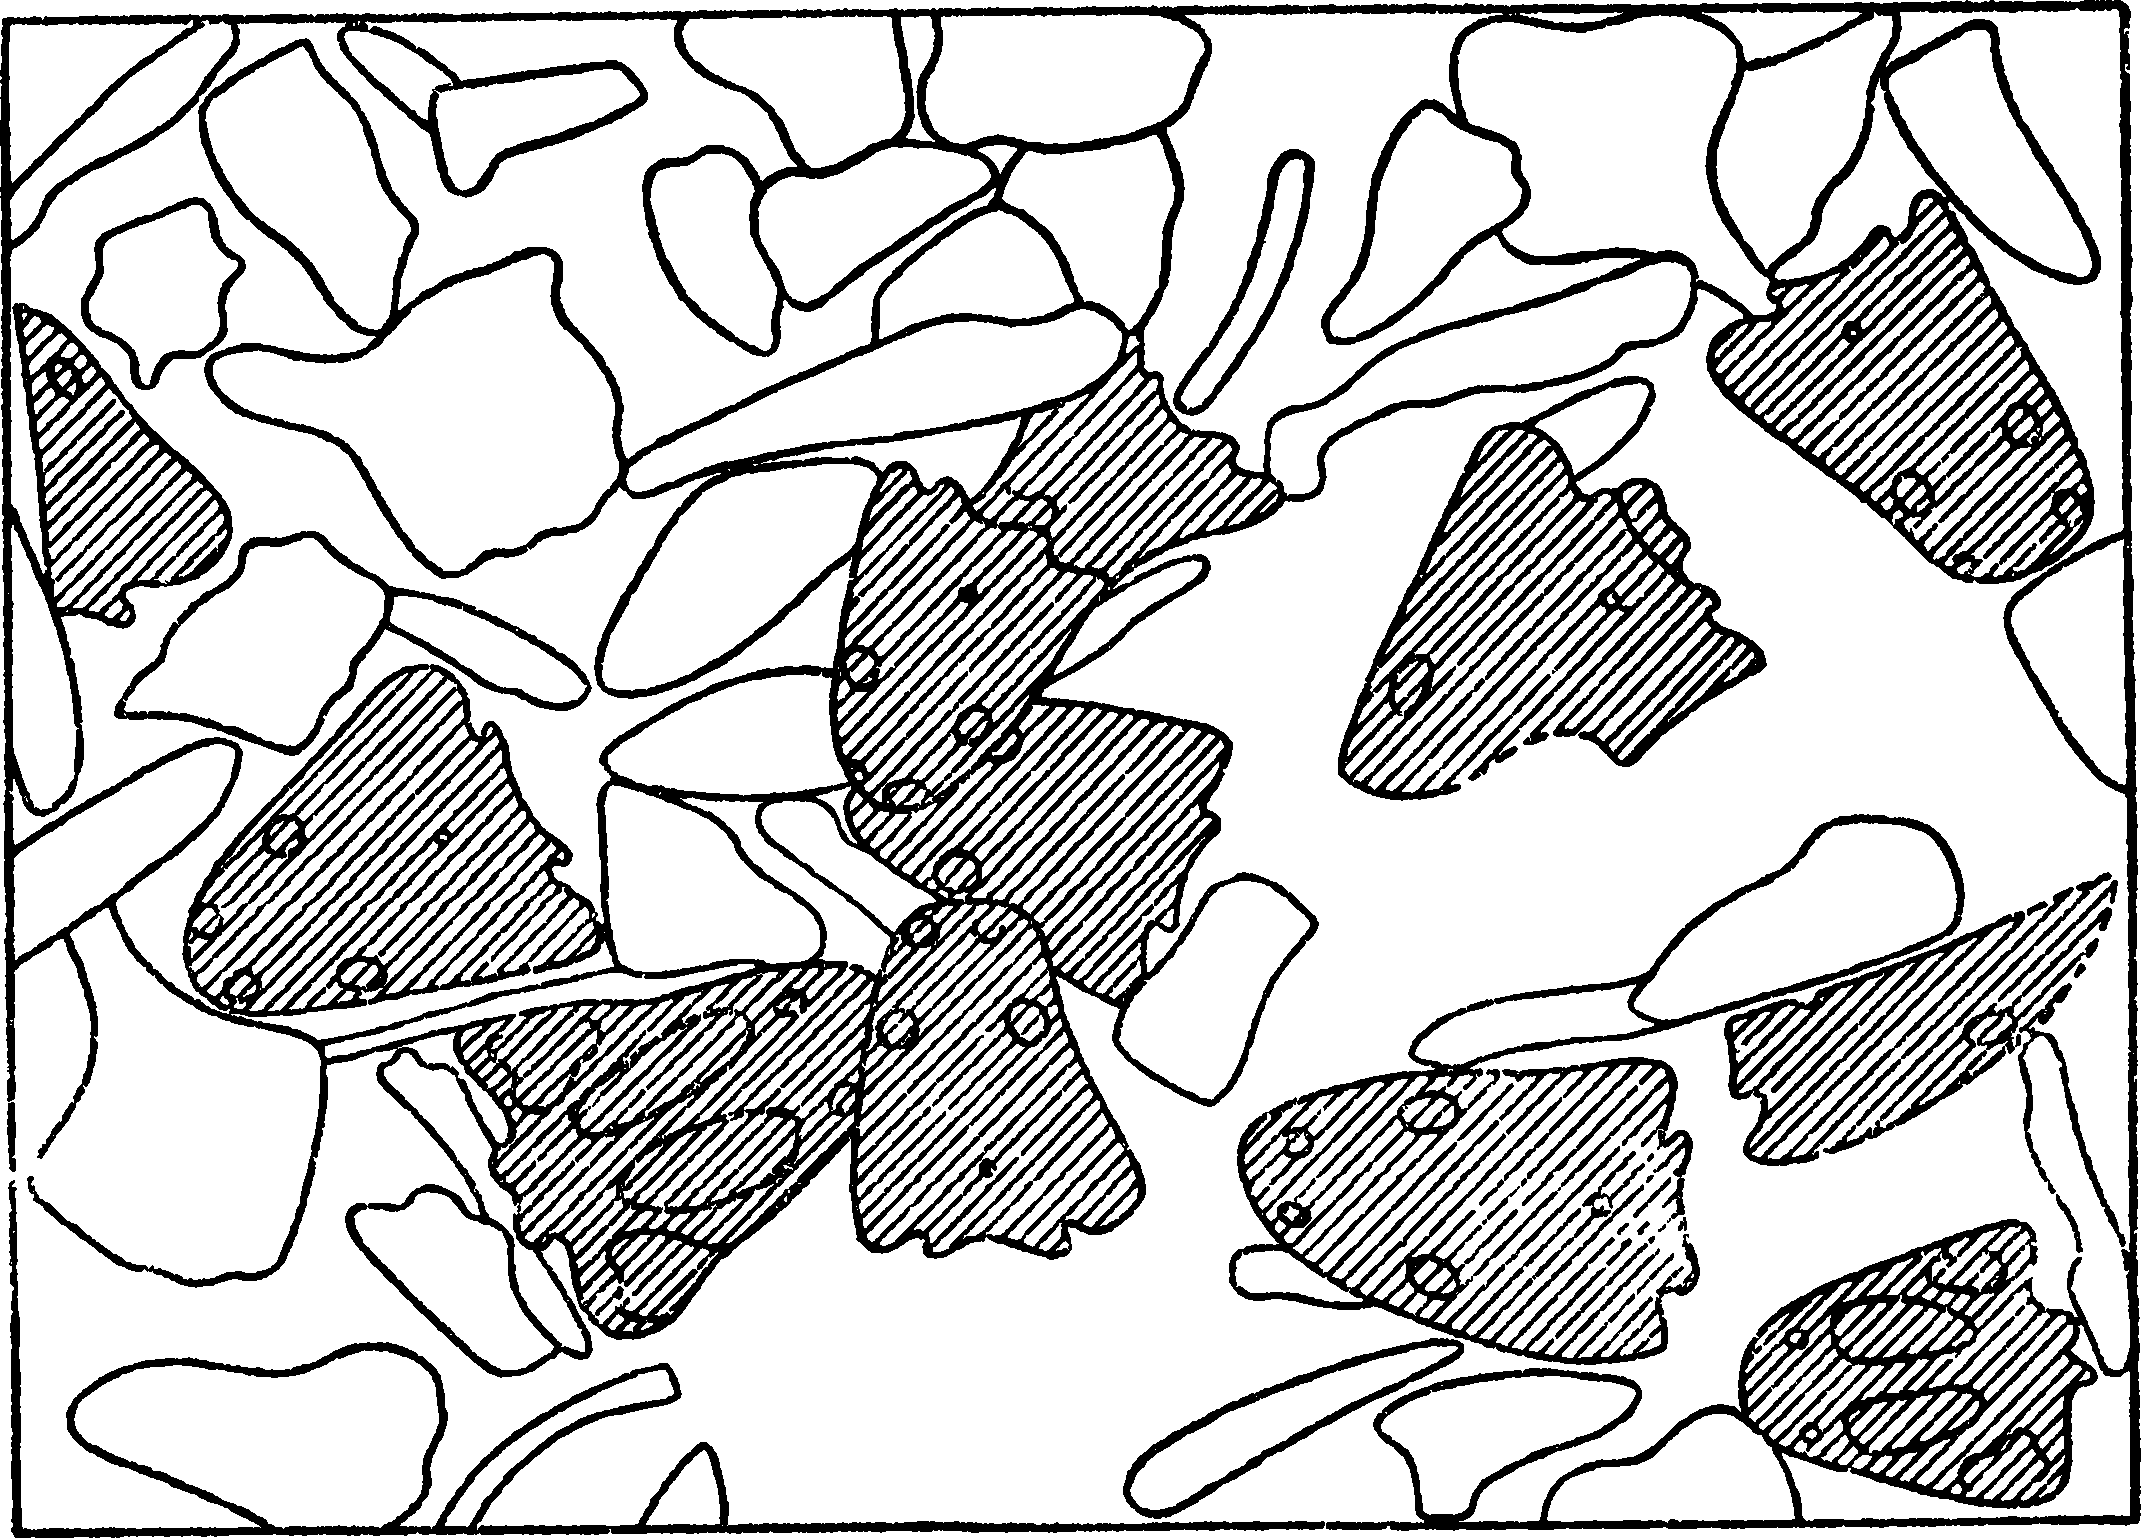 Рис. 15. Тип скоплении остатков крупных стегоцефалов (Buettneria), характерный для местонахождений V зоны в СССР и более высоких слоев триаса в Сев. Америке. Сильно уменьшено